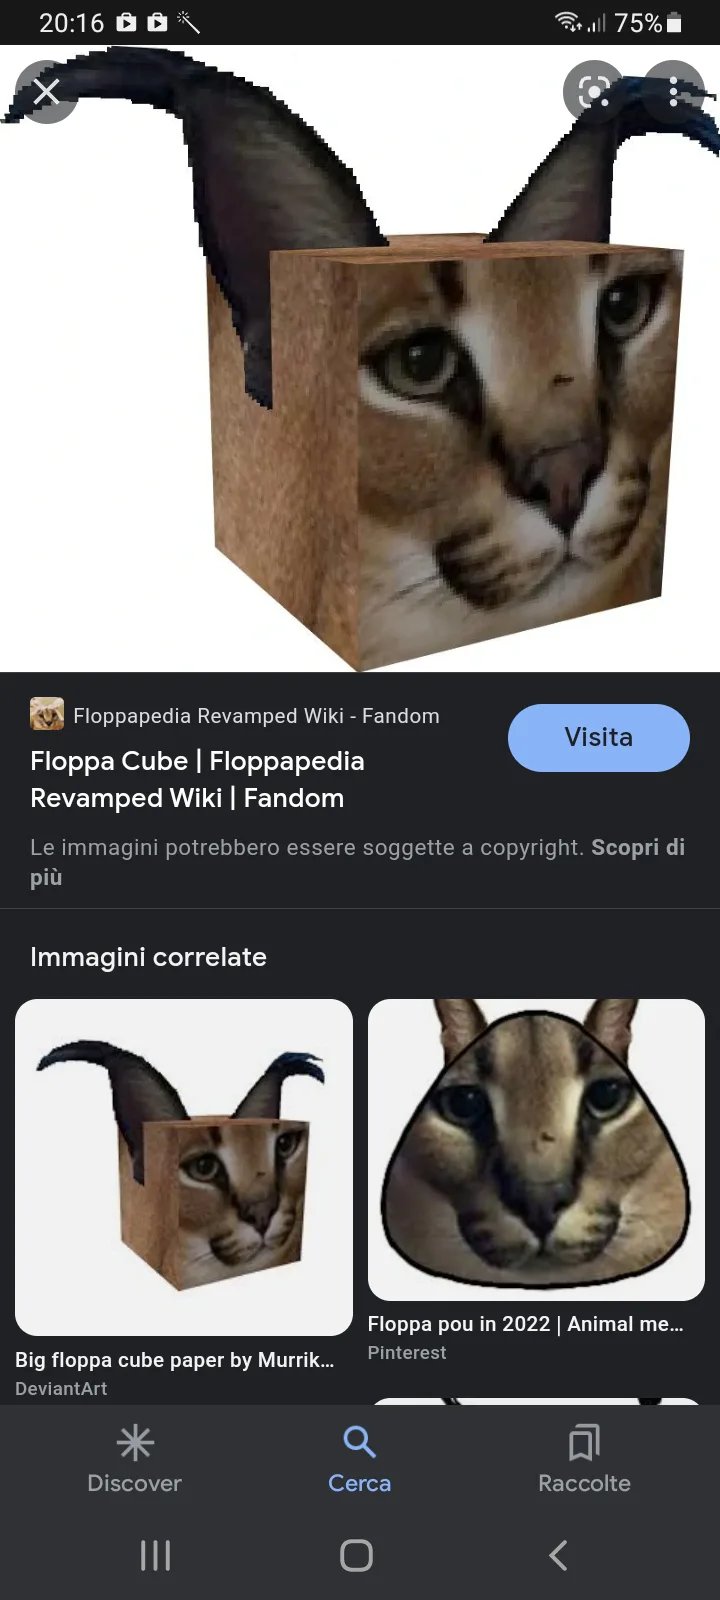 Floppa Cube, Floppapedia Revamped Wiki